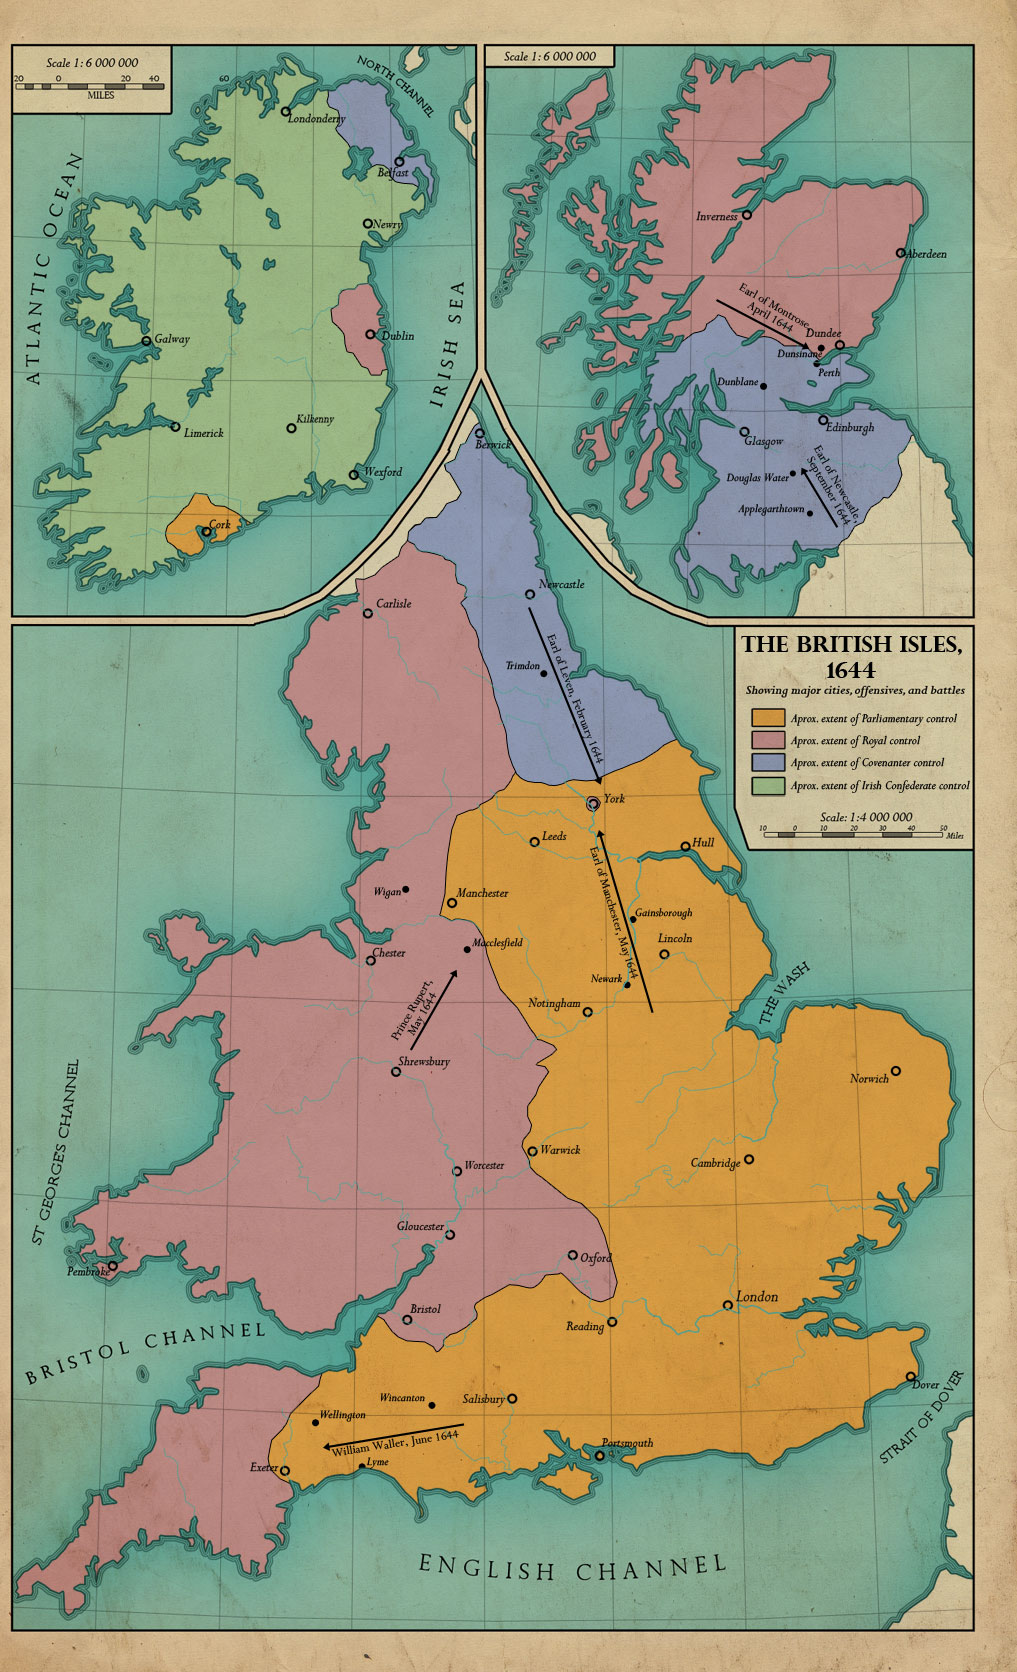 The British Isles, 1644